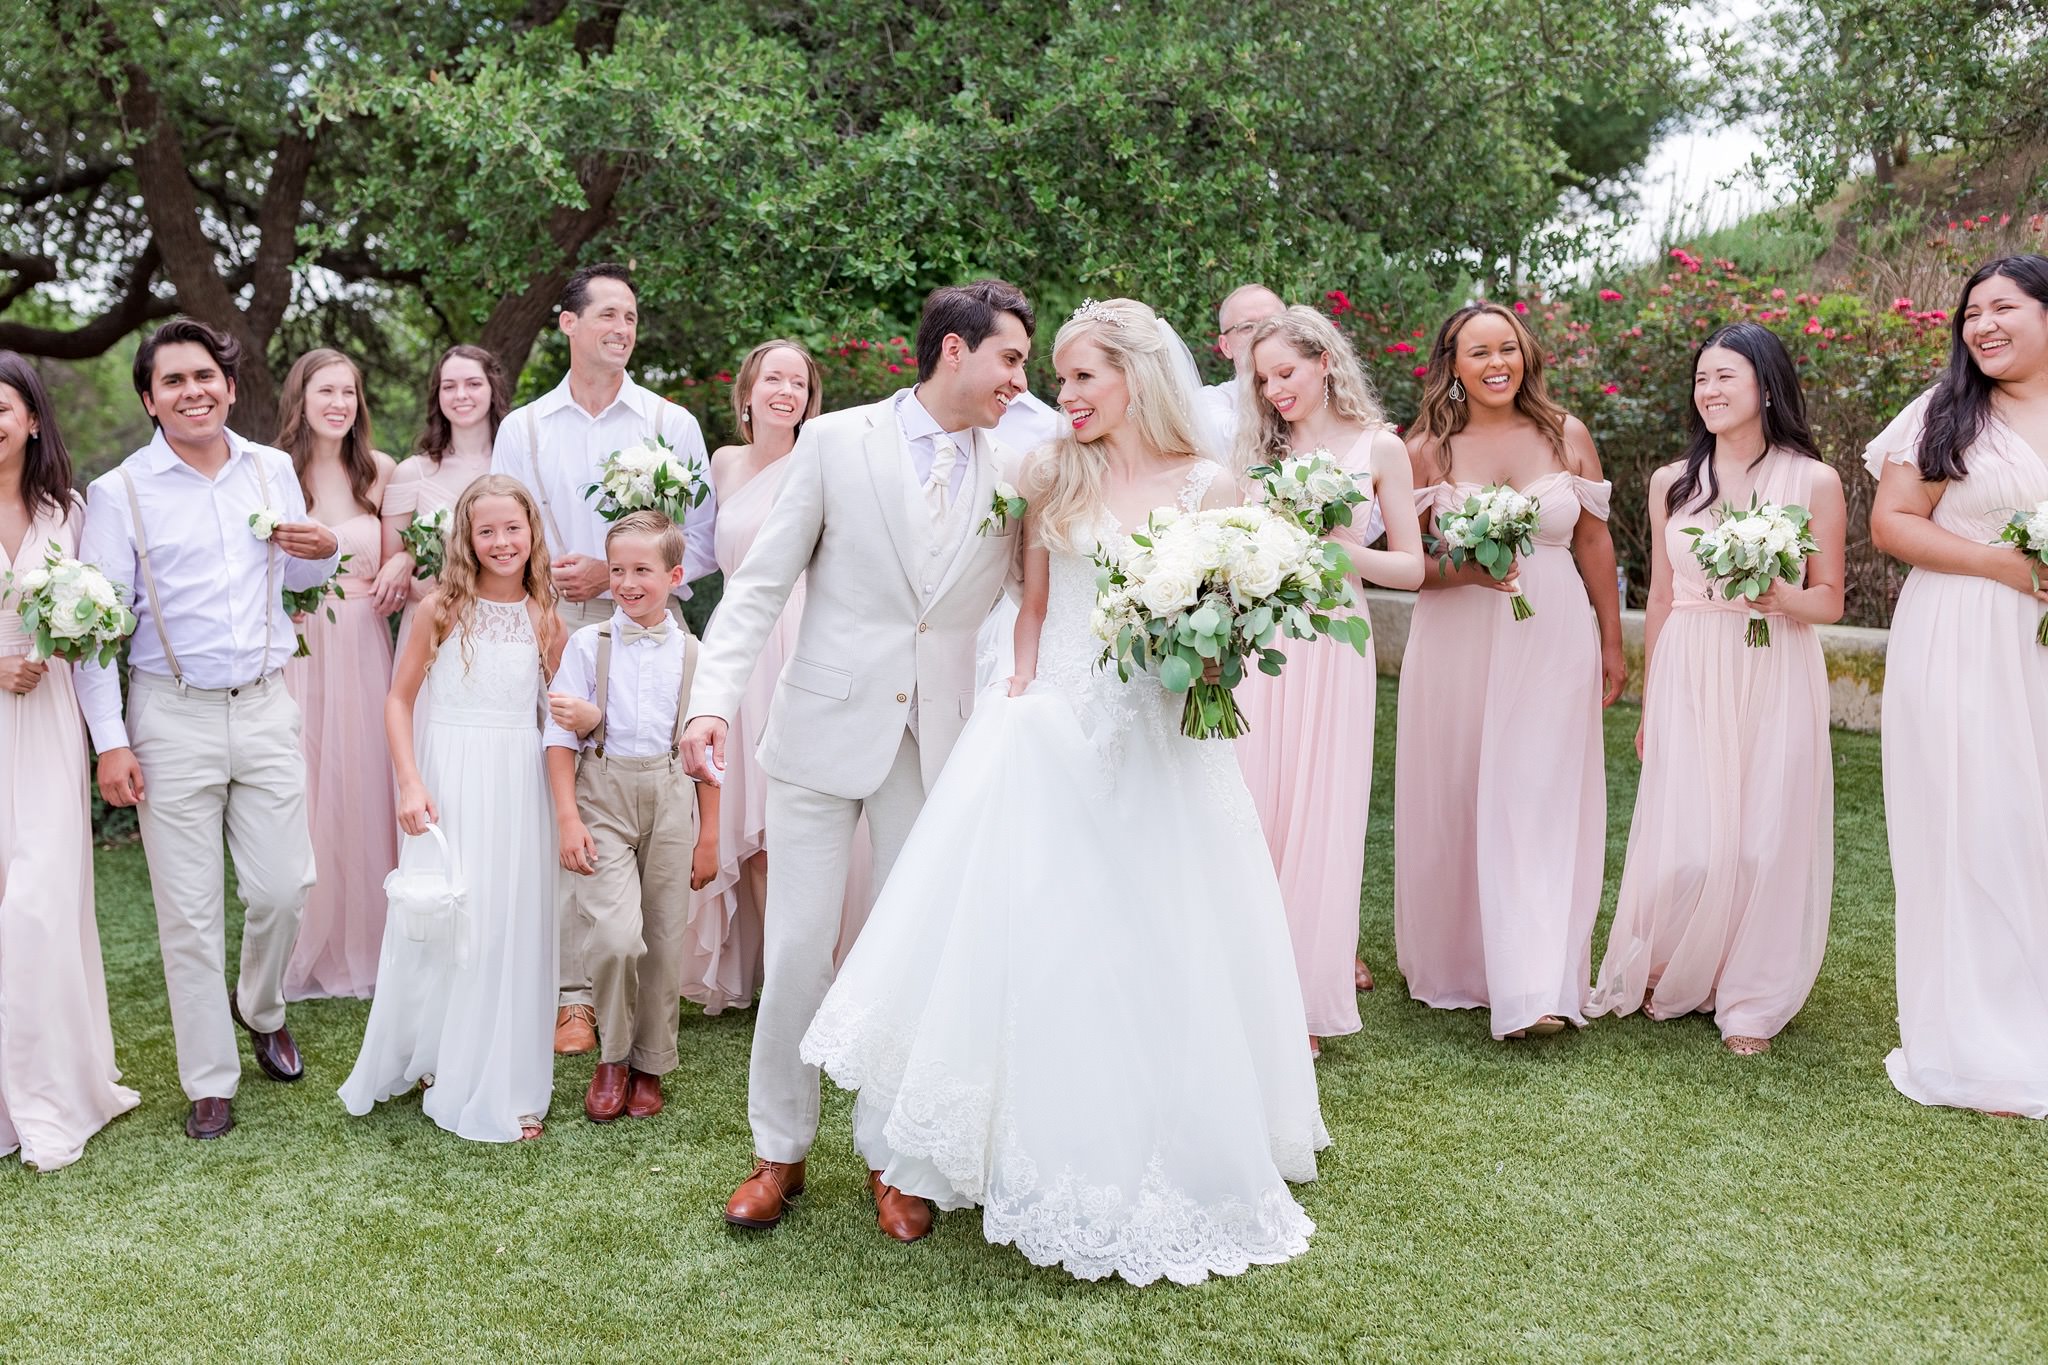 An Intimate Wedding at Kendall Point in Boerne, TX by Dawn Elizabeth Studios, San Antonio Wedding Photographer